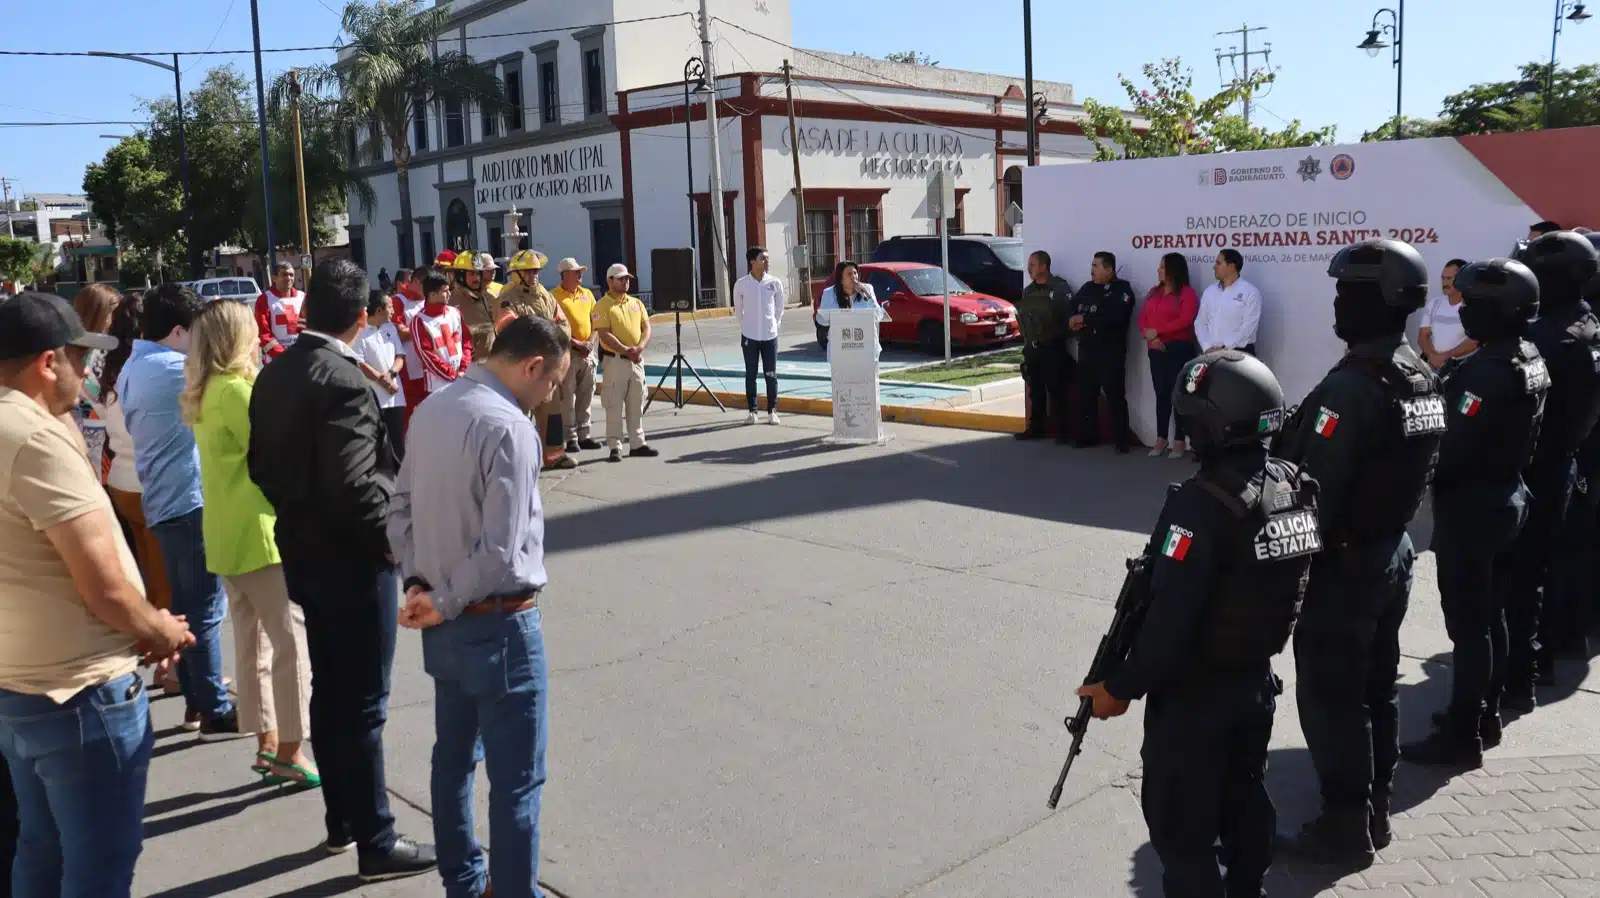 Dan banderazo a operativo de seguridad de Semana Santa 2024 en Badiraguato.